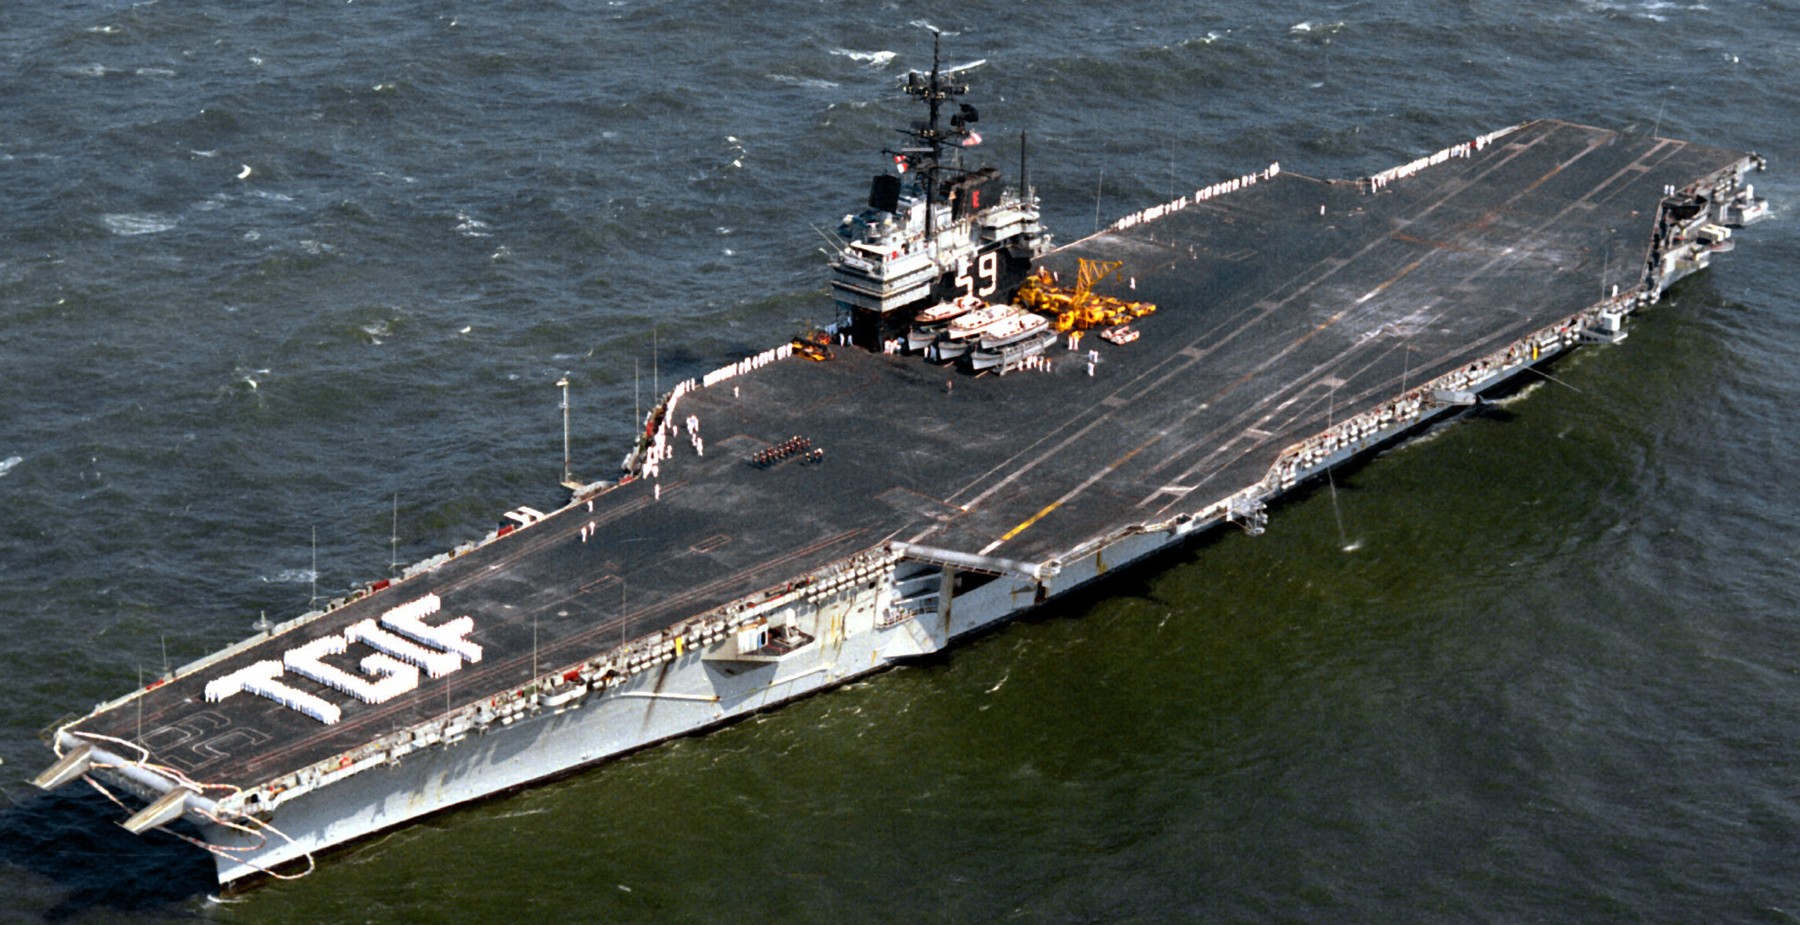 cv-59 uss forrestal aircraft carrier us navy 82